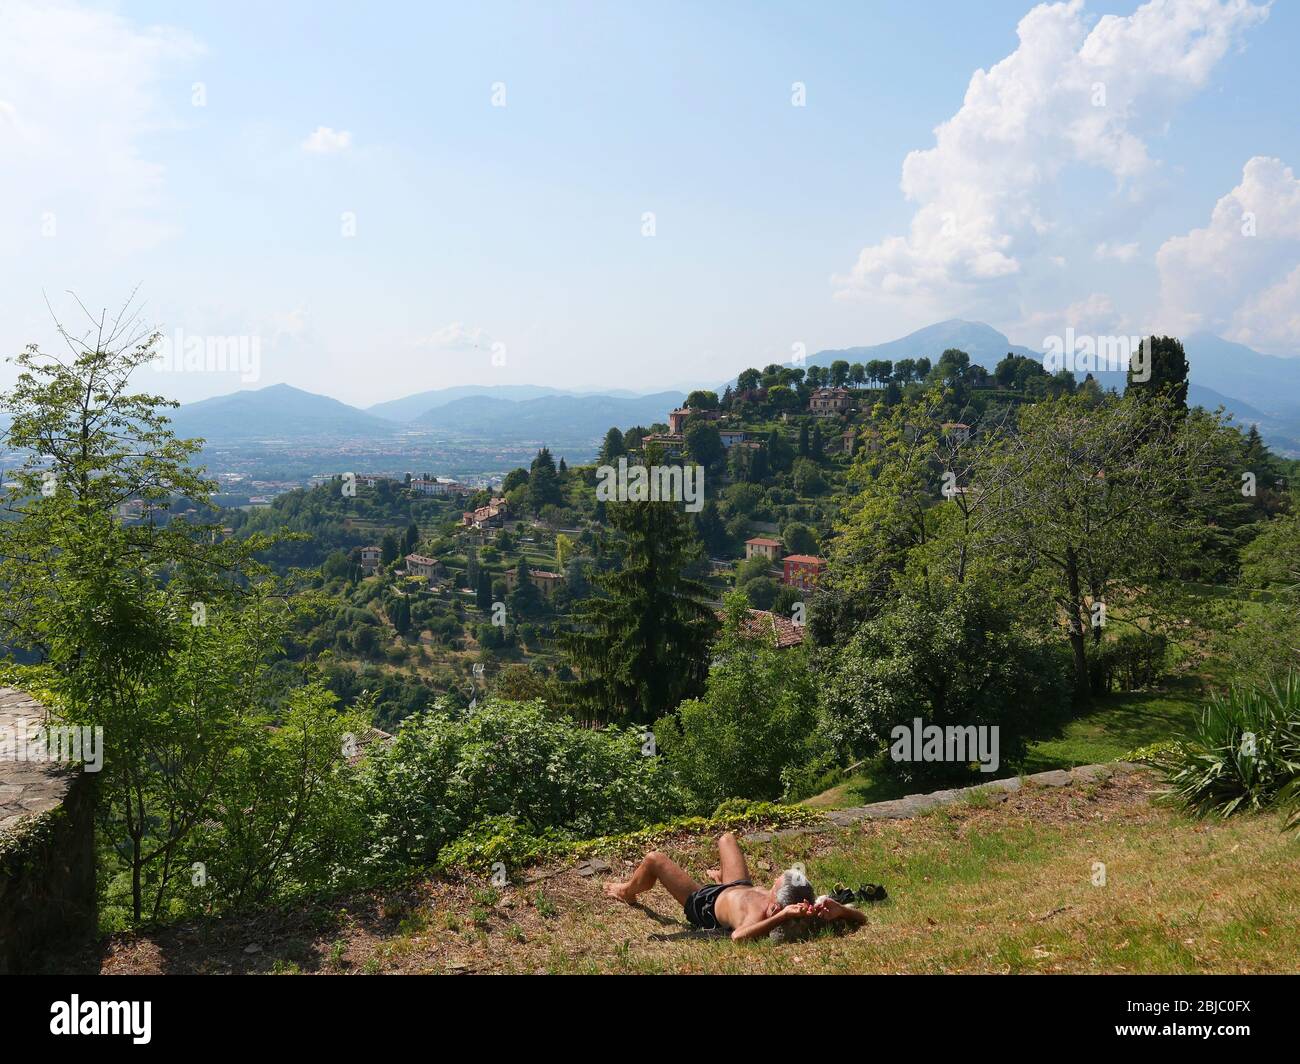 Un homme qui a un bain de soleil avec une vue magnifique sur la petite ville dans une vallée verte luxuriante Banque D'Images